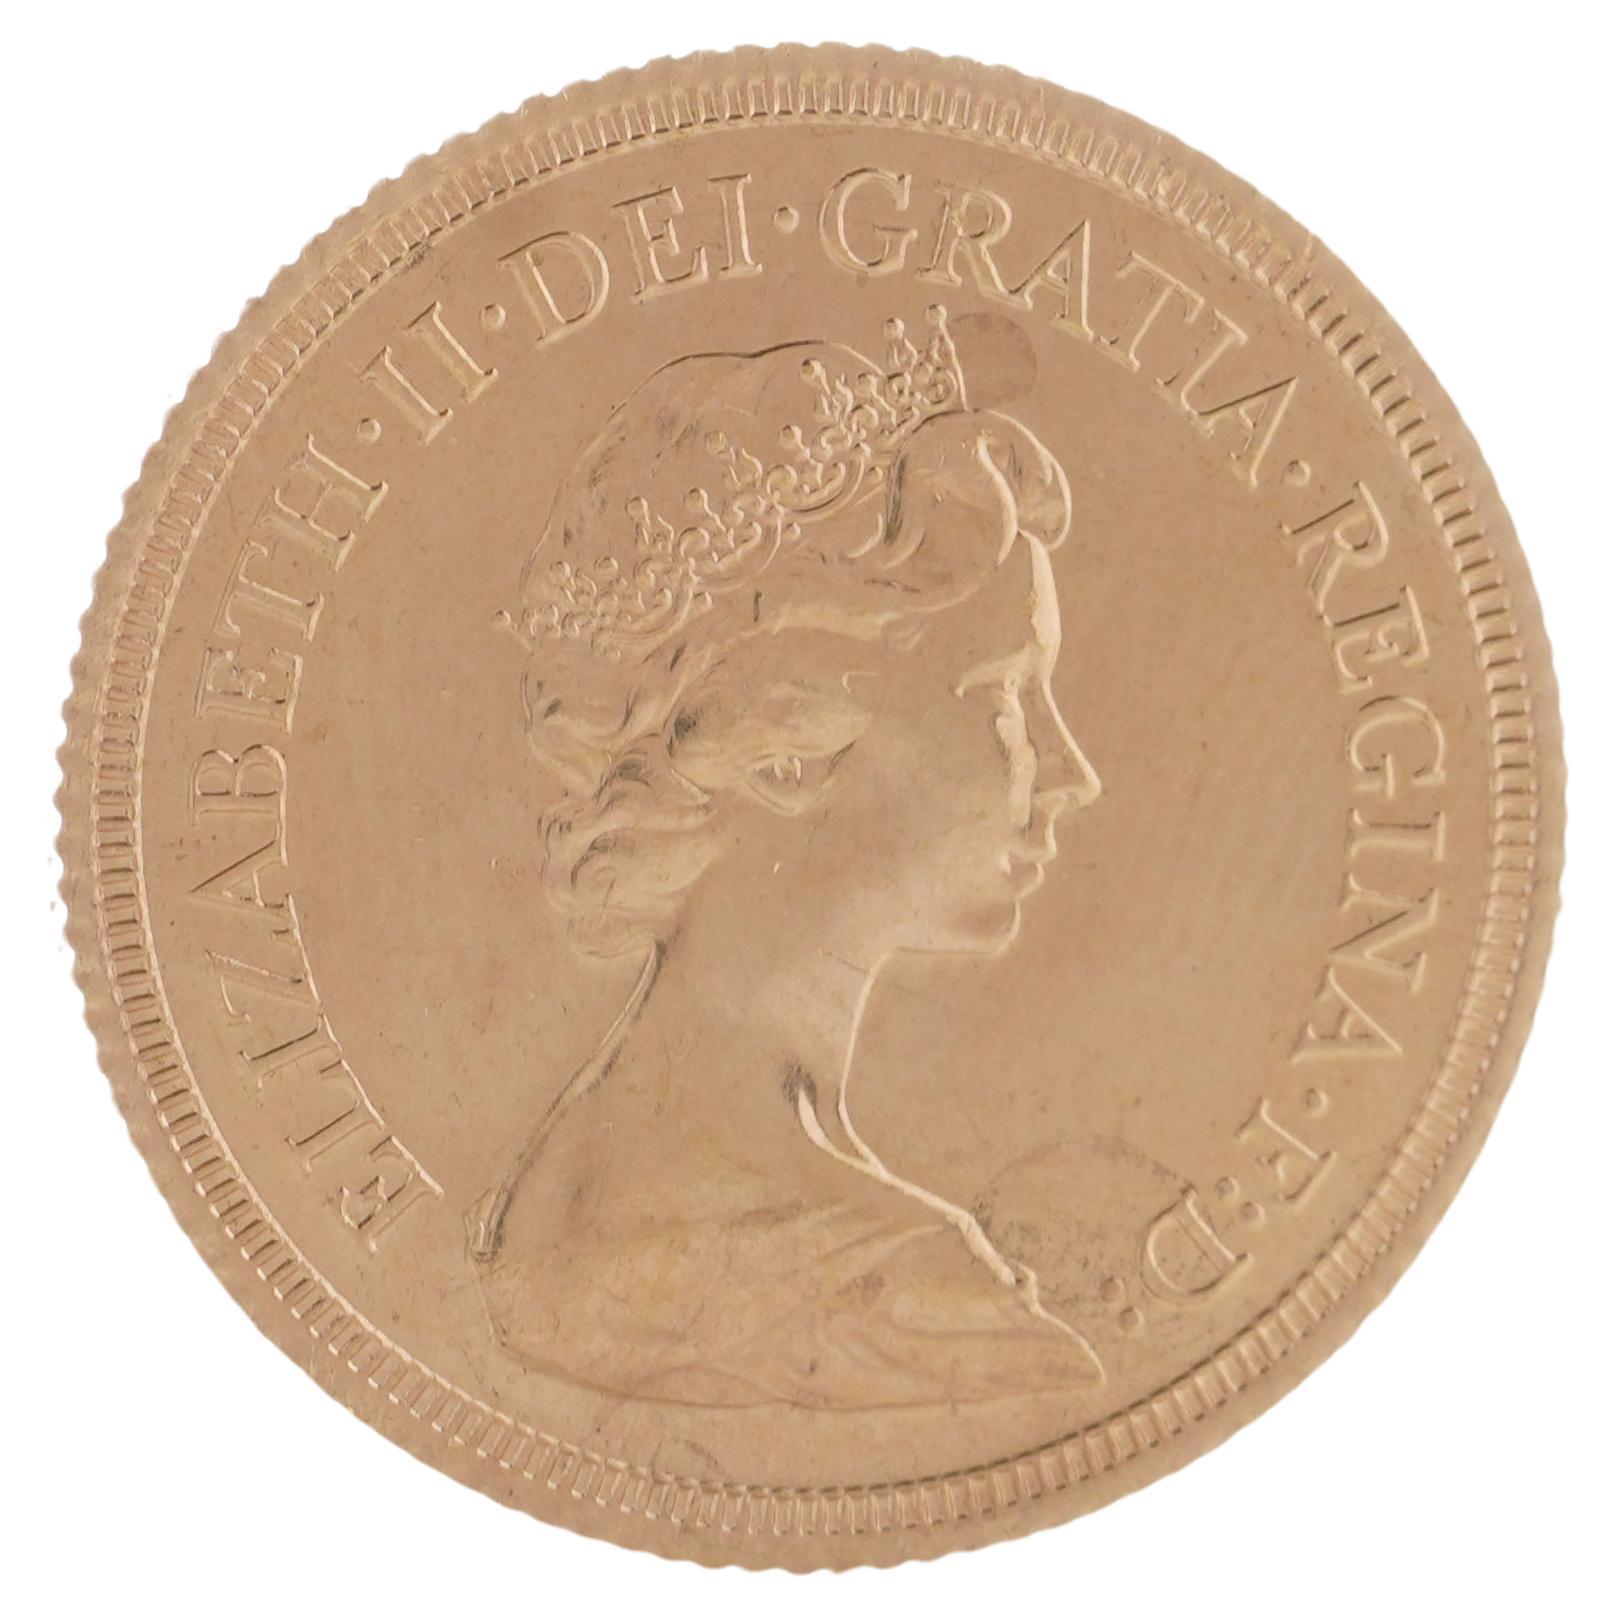 1979 Gold Sovereign - Elizabeth II Decimal Portrait For Sale